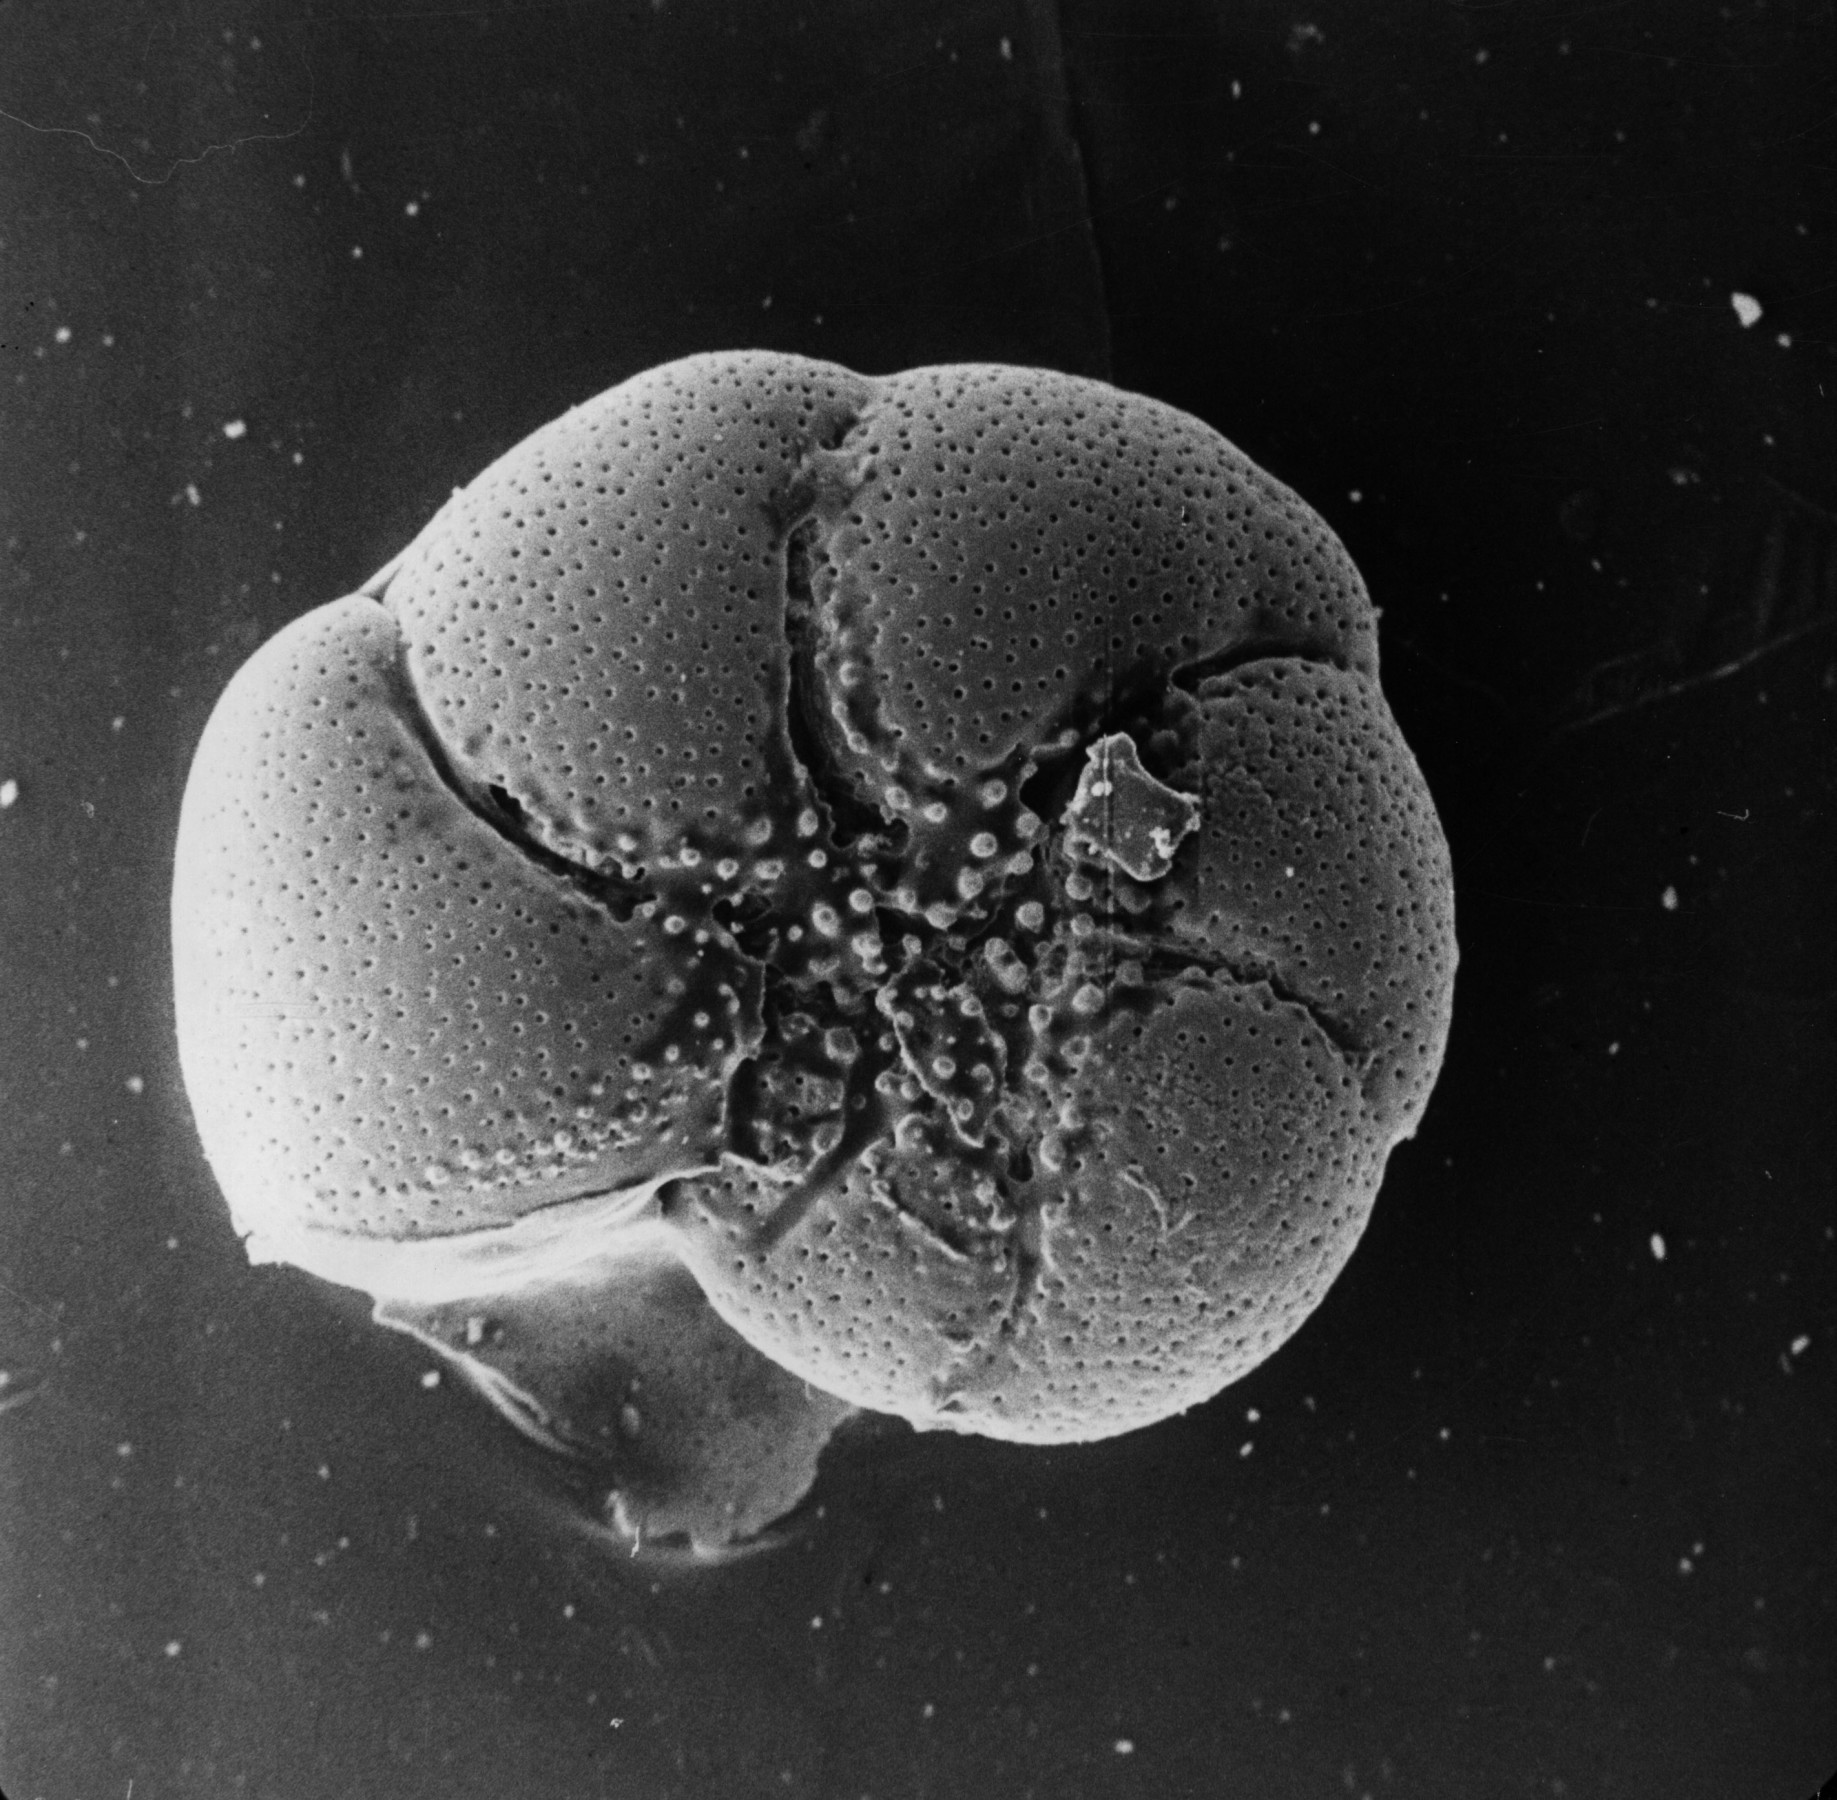  Eine Schwarz-Weiß-Mikrofotografie der abgerundeten Oberfläche einer winzigen Foraminiferenschale, die mit kleinen Punkten bedeckt ist und in der Mitte eine sternförmige Struktur aufweist.